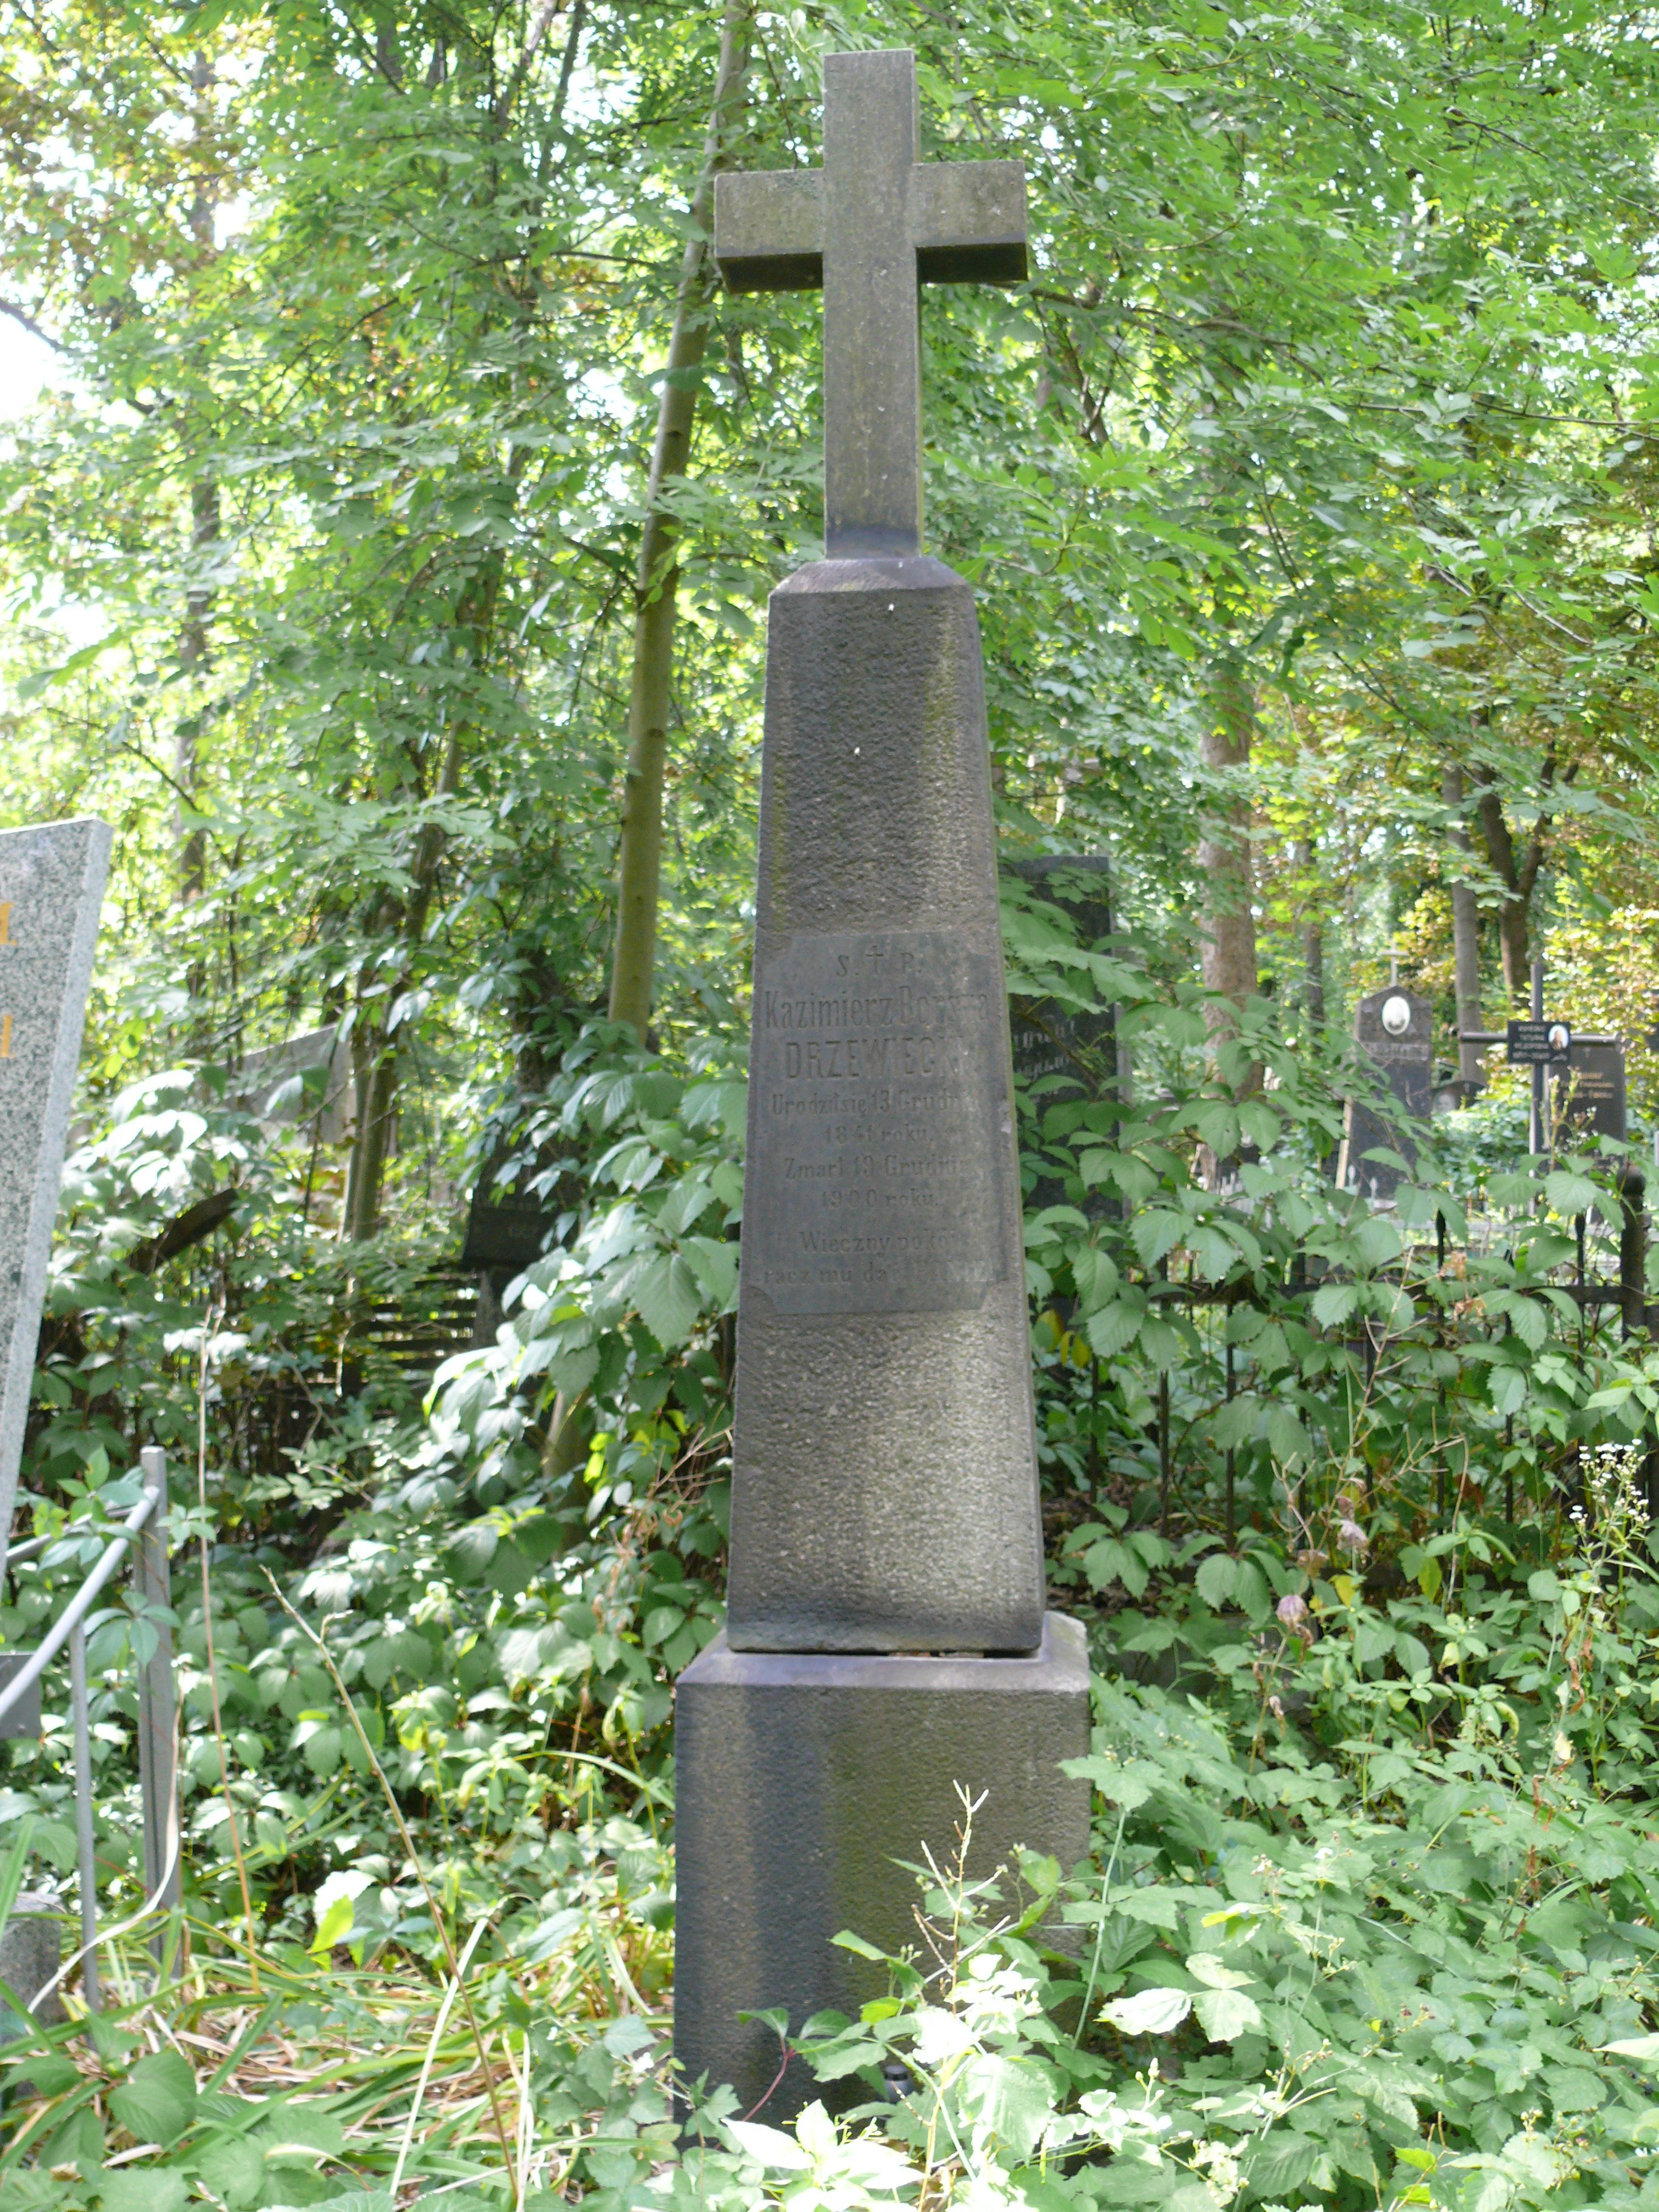 Fotografia przedstawiająca Tombstone of Kazimierz Drzewiecki